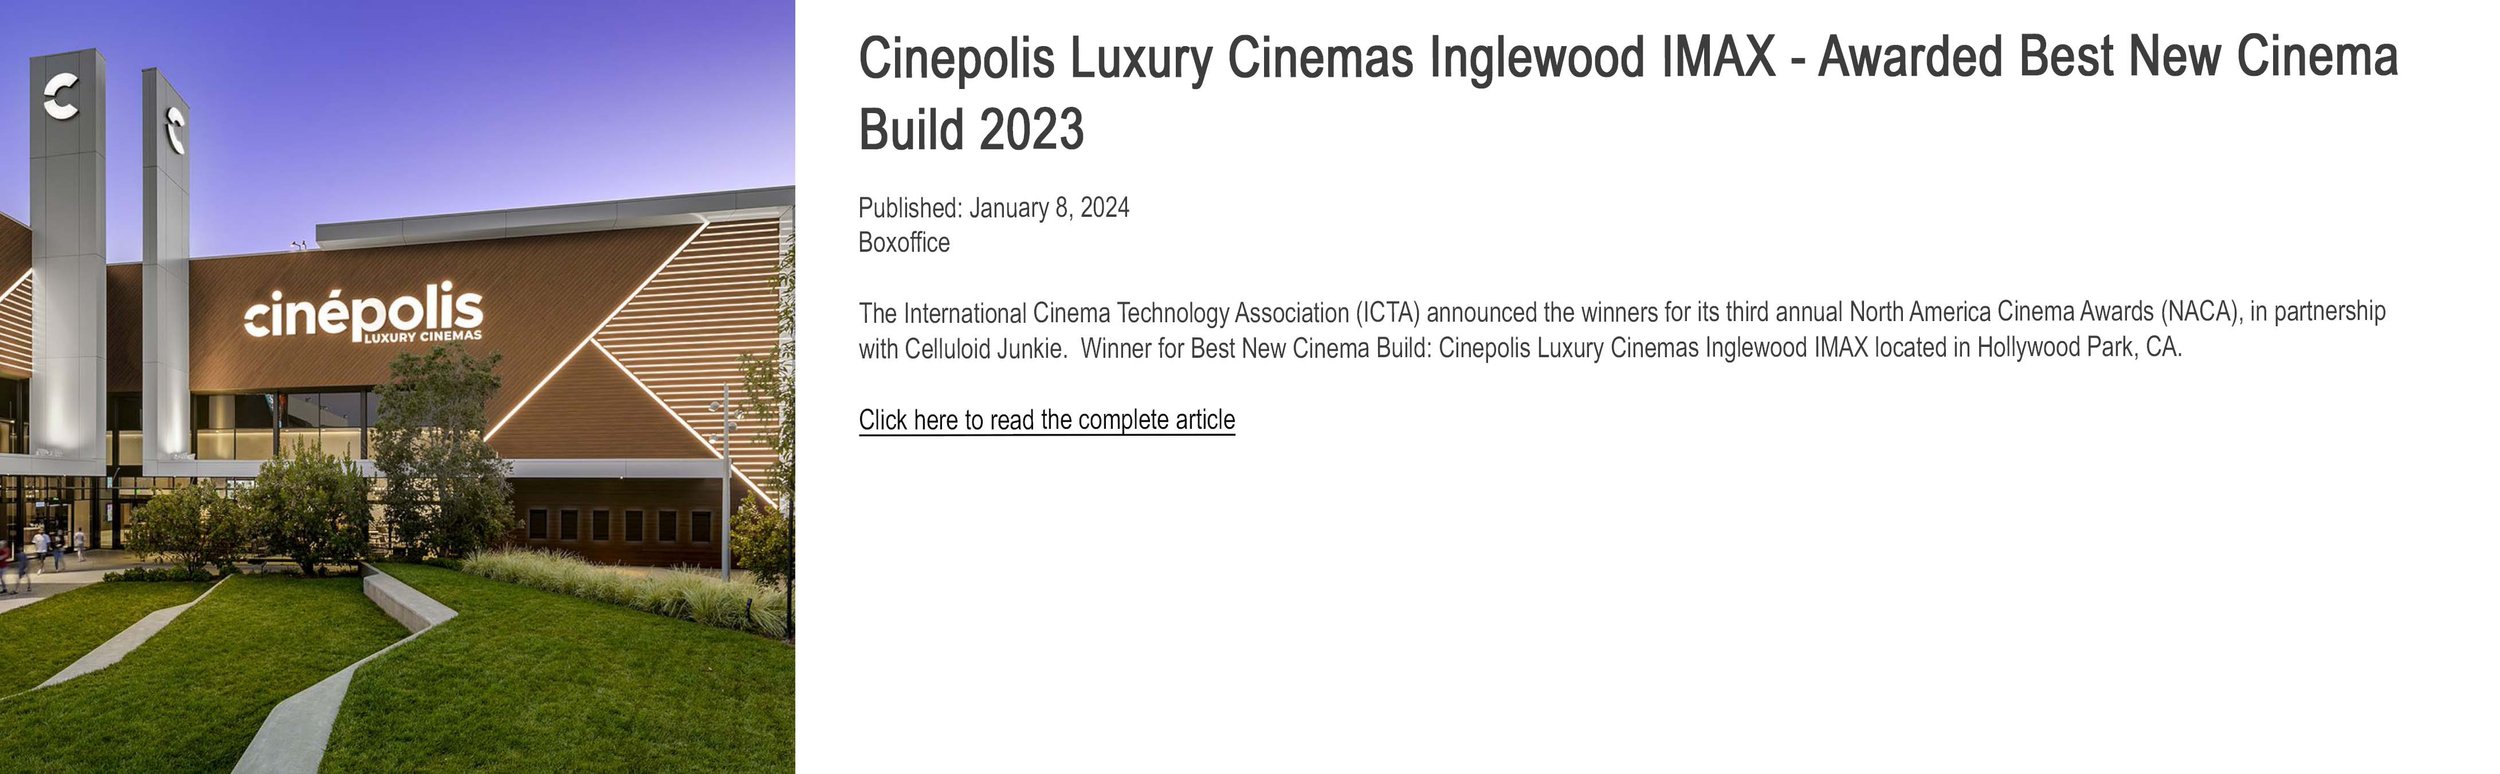 Cinepolis Luxury Cinemas Inglewood IMAX